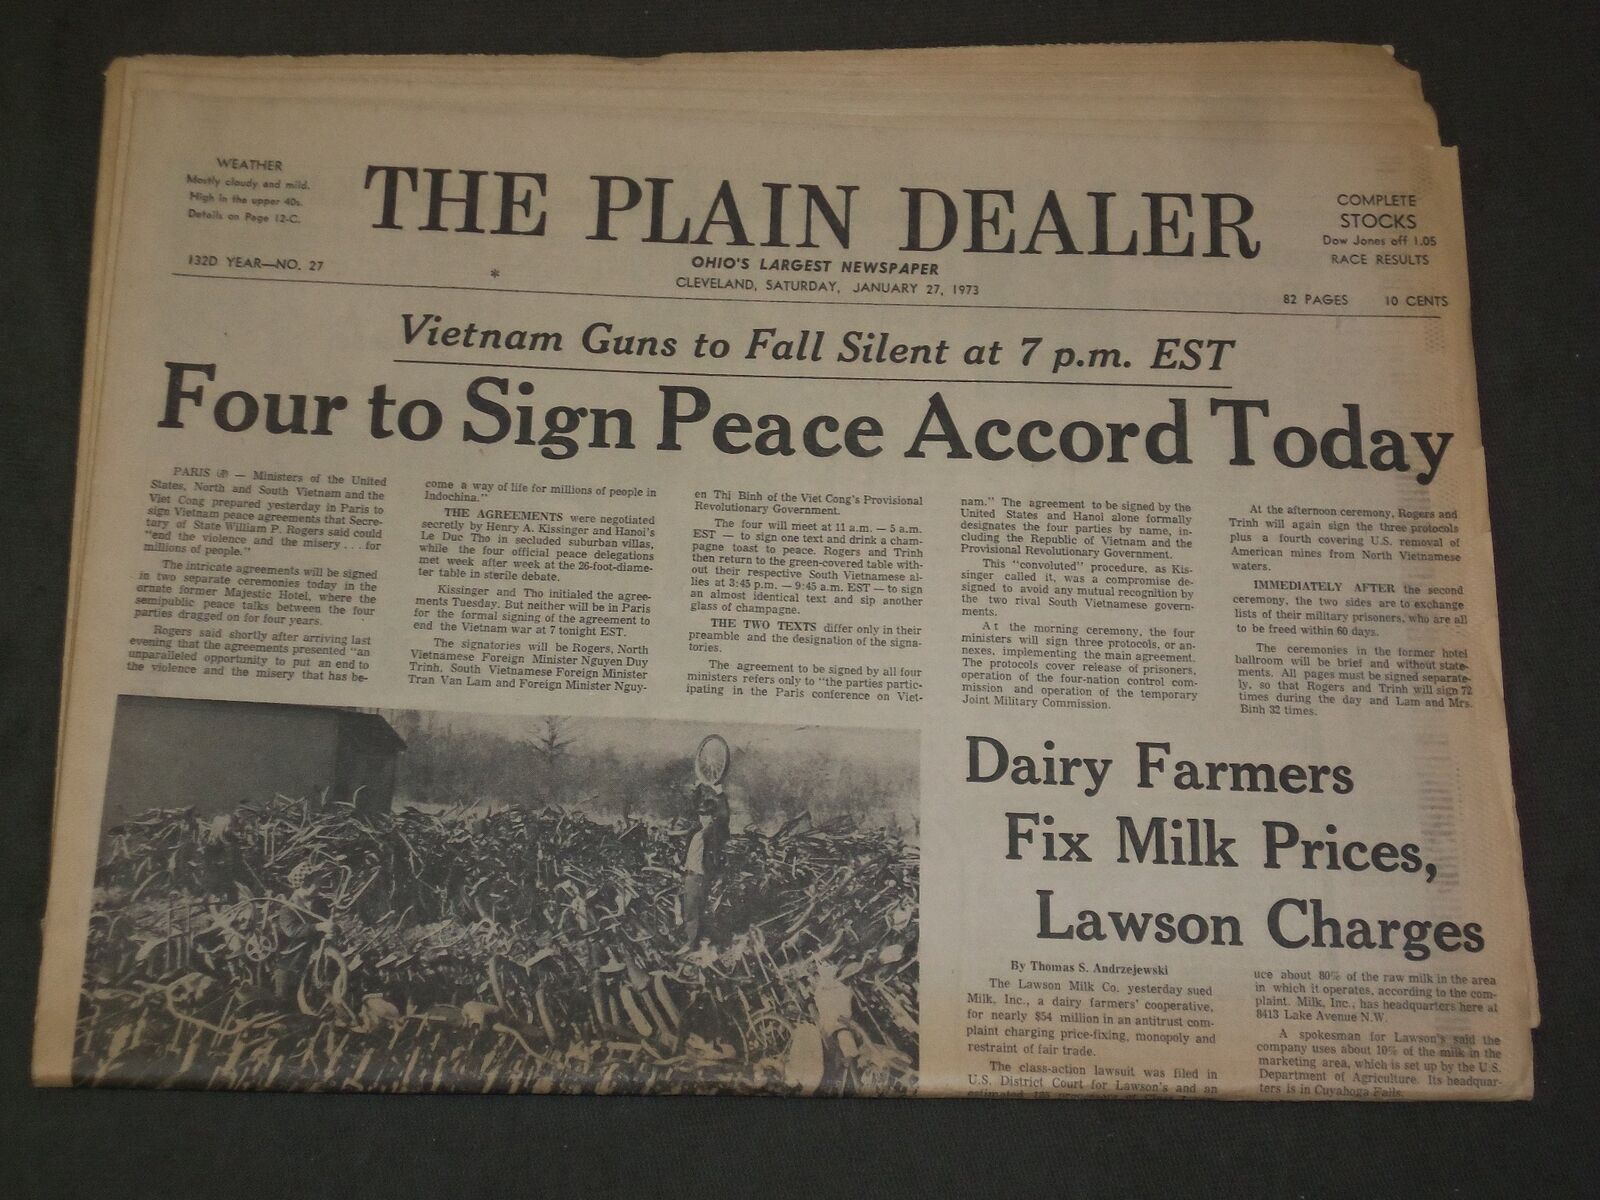 1973 JANUARY 27 THE PLAIN DEALER NEWSPAPER - VIETNAM PEACE AGREEMENT - NP 3284